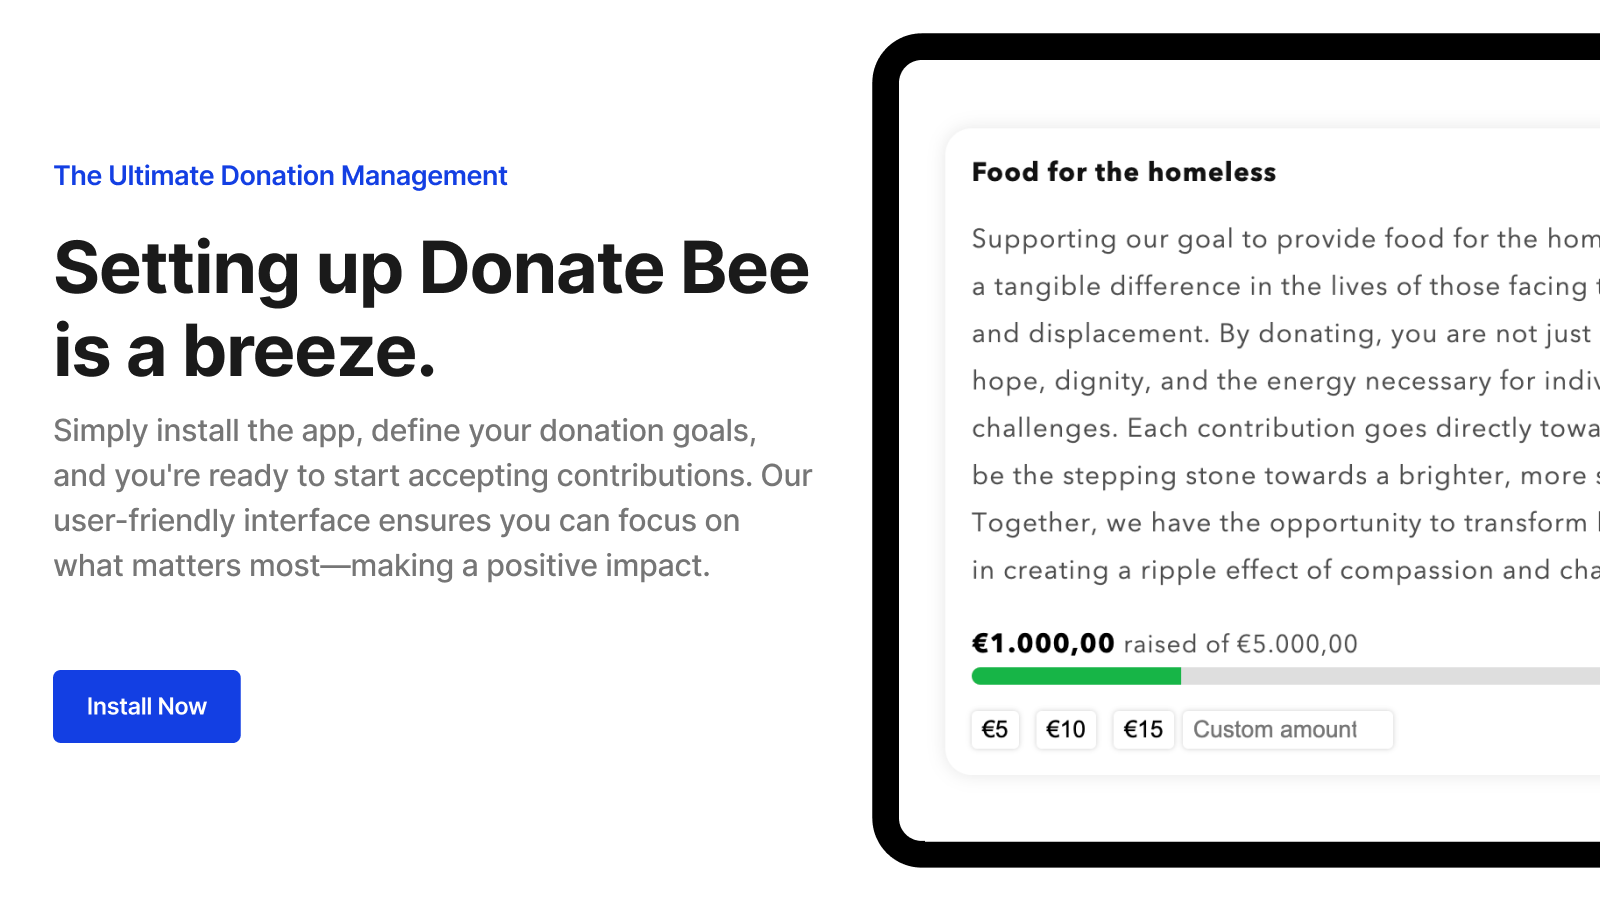 Configurar o Donate Bee é muito fácil.